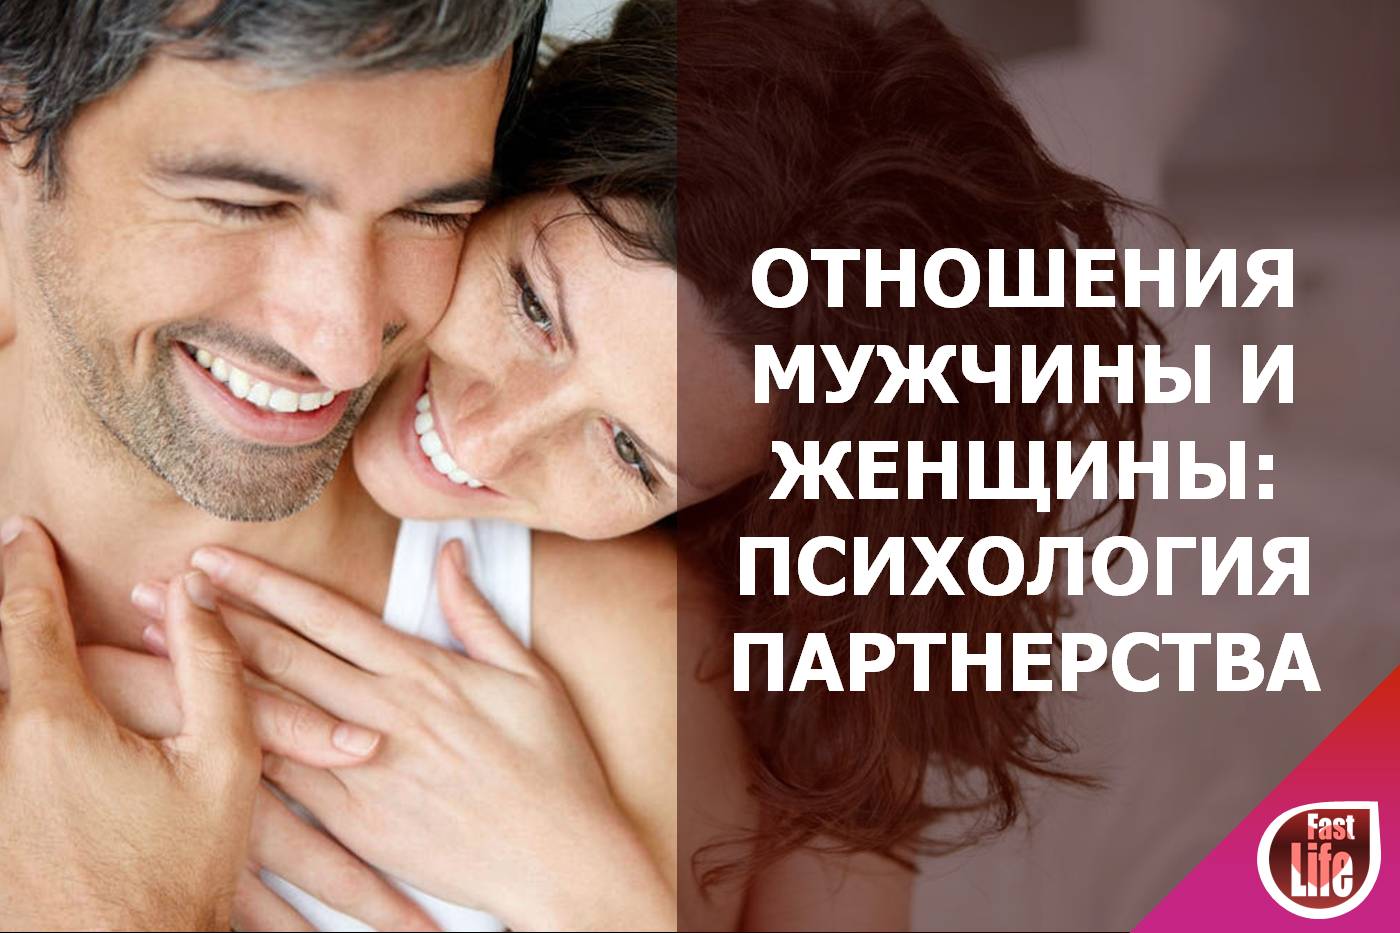 Отношения между мужчиной и женщиной психология: 5 секретов, чтобы сохранить идеальные отношения